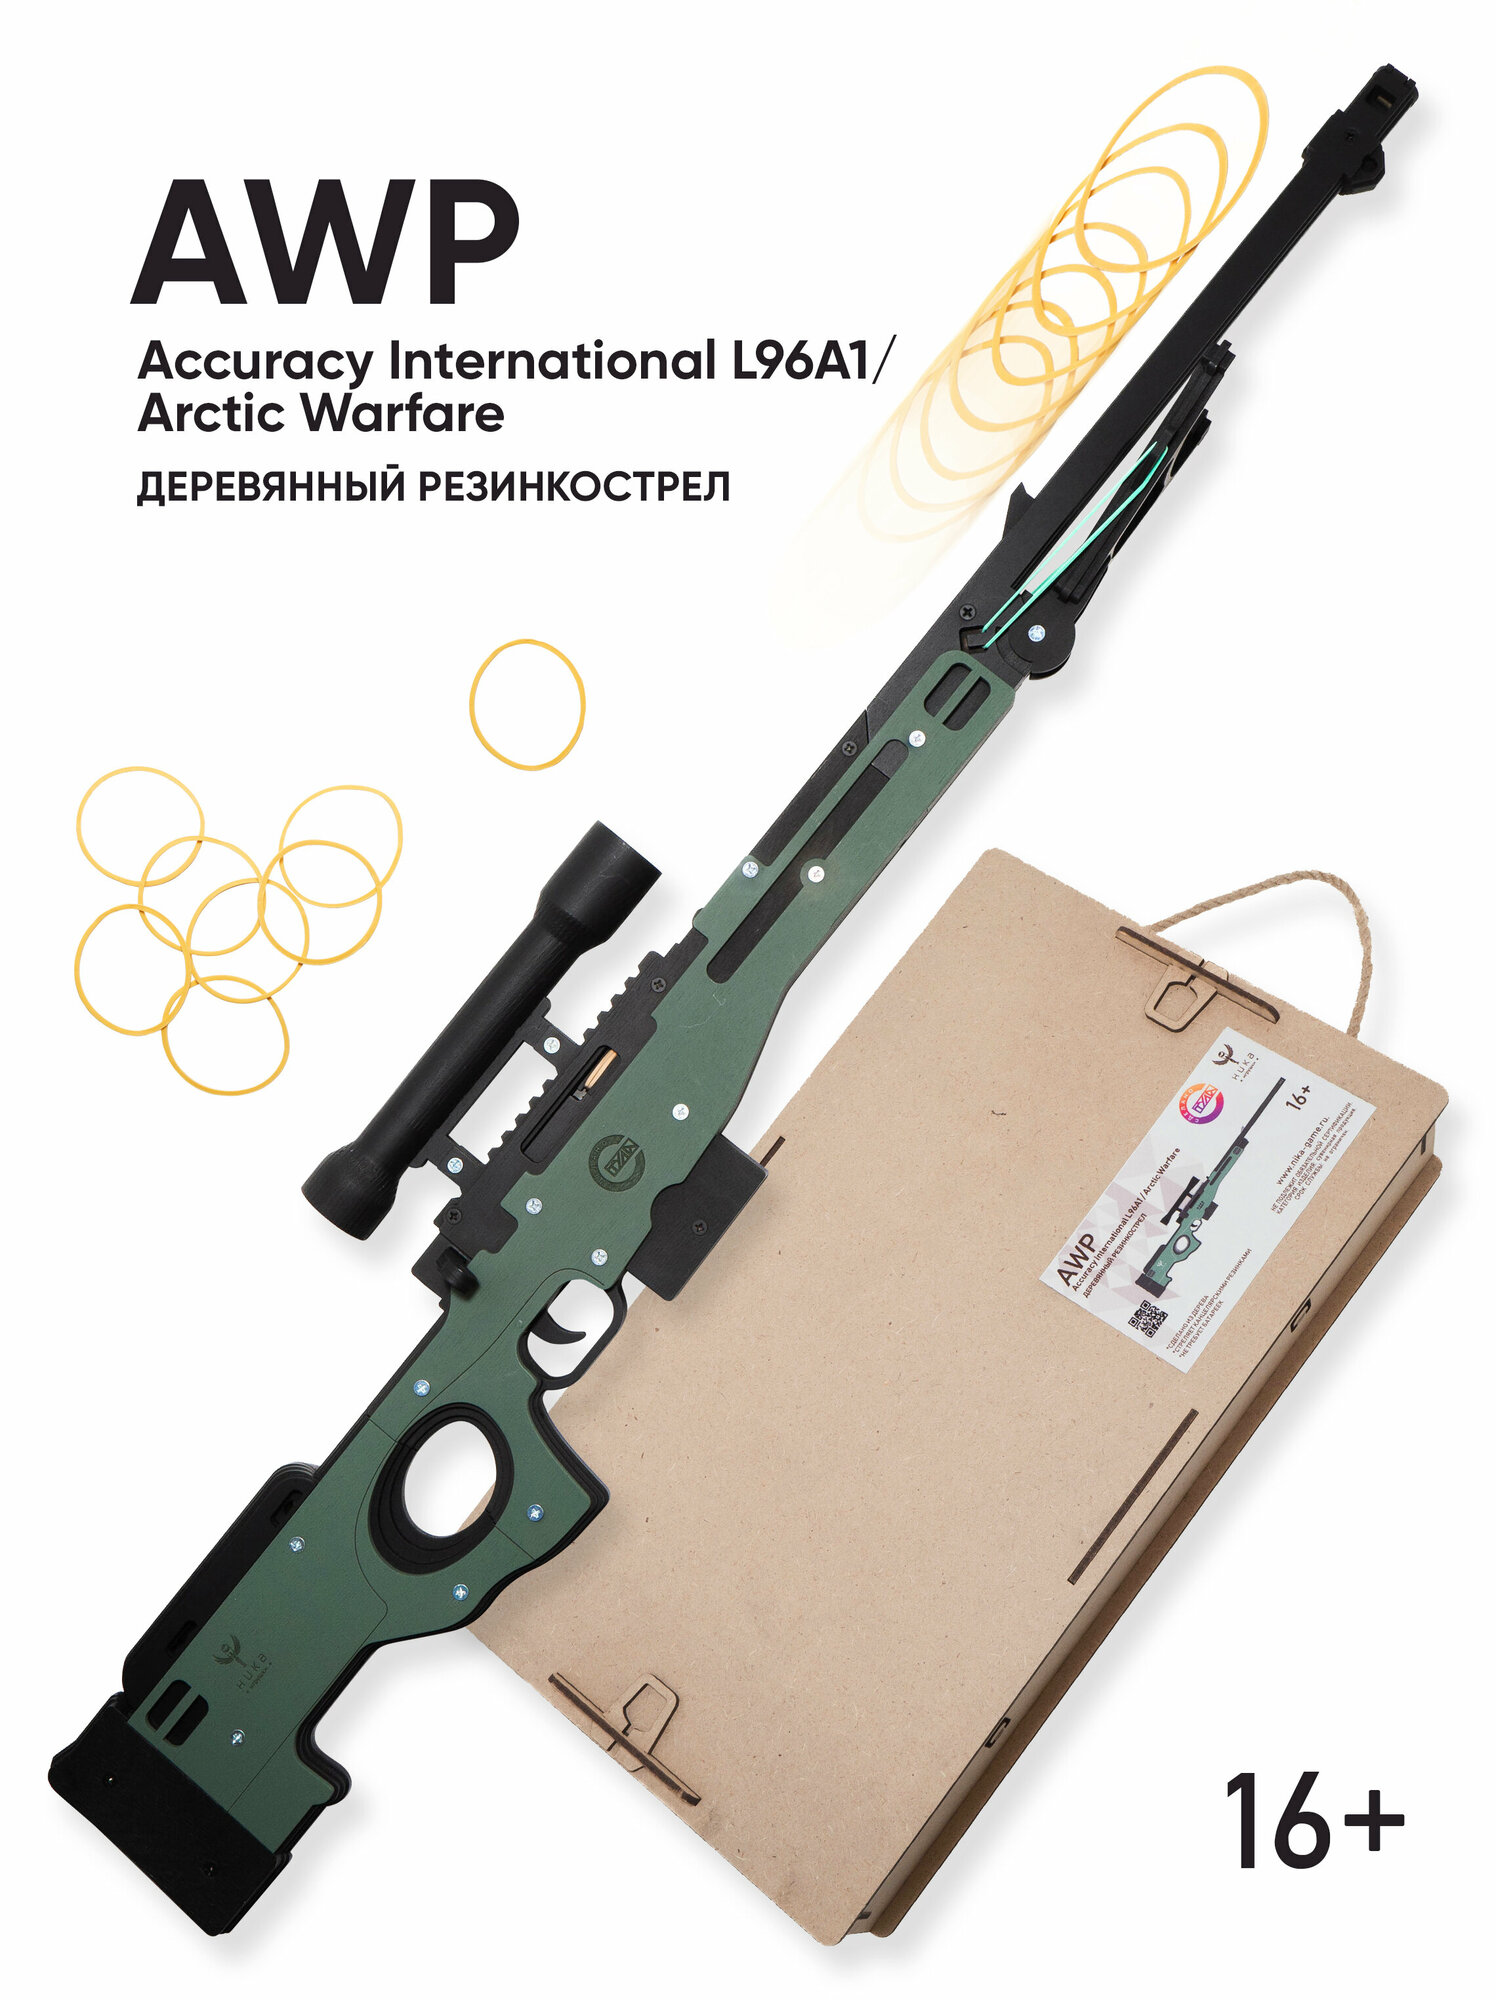 "Винтовка AWP" - деревянный резинкострел в подарочной упаковке